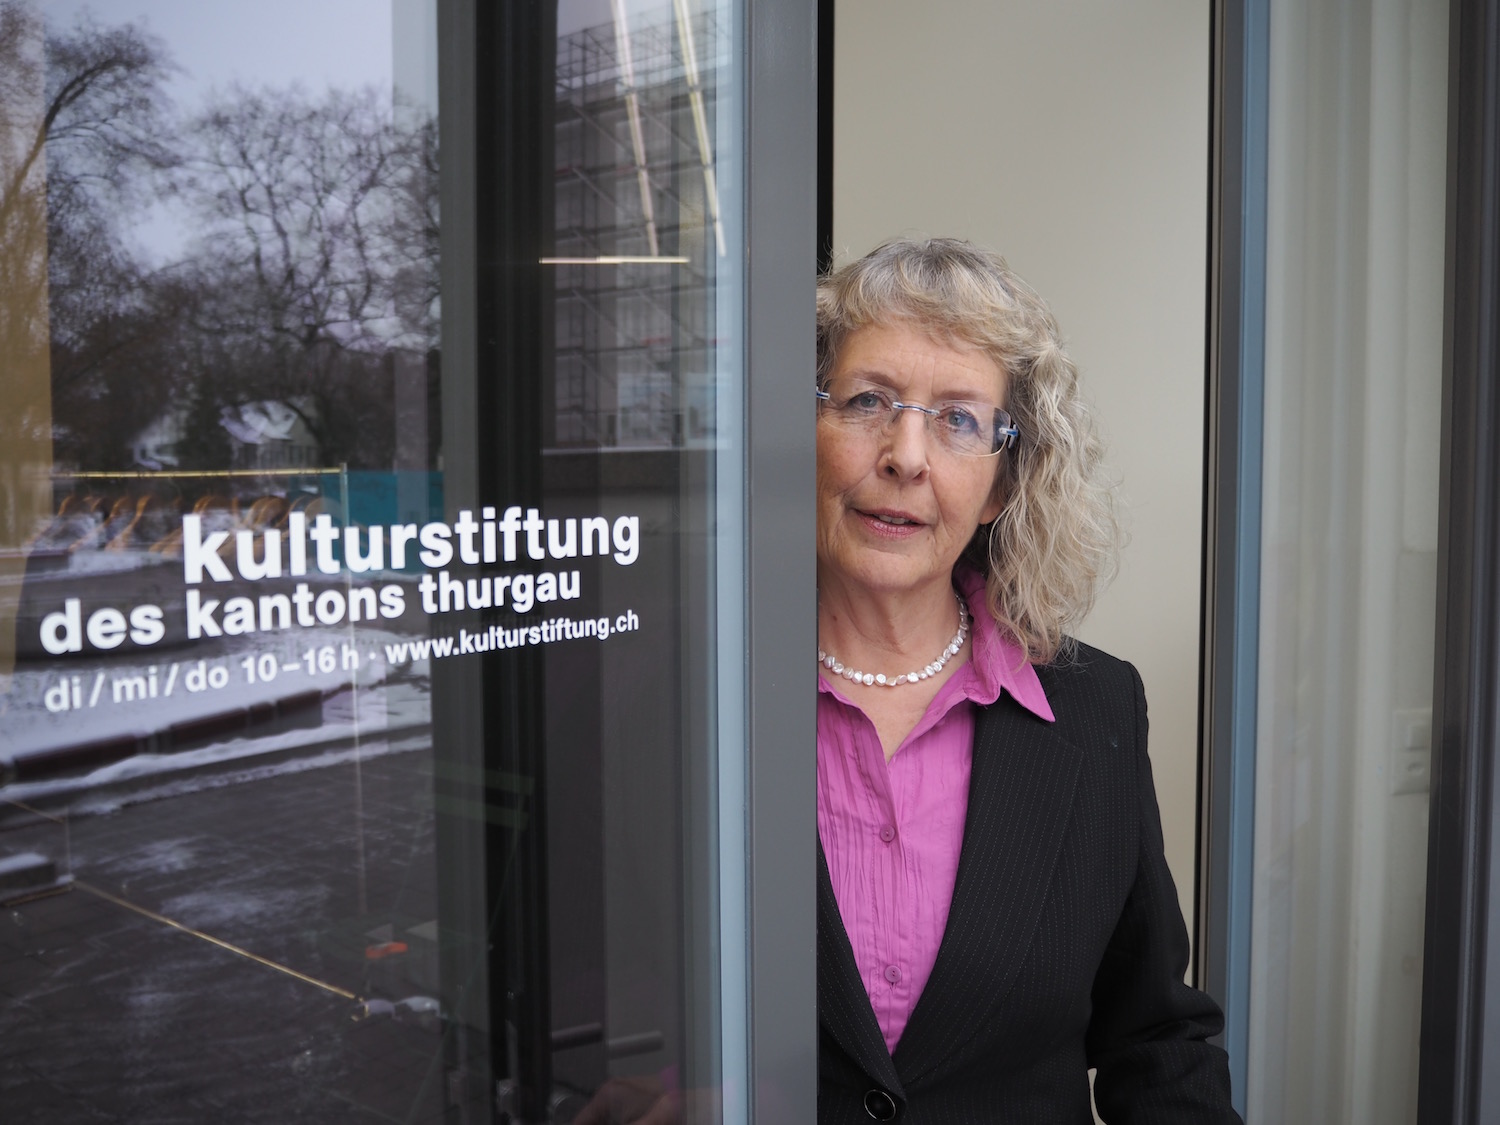 «Was die Änderungen für die Stiftungen bedeuten,  ist jetzt noch nicht abzusehen.» Renate Bruggmann, Präsidentin der Kulturstiftung, zu den Anpassungen bei der Kulturstiftung.